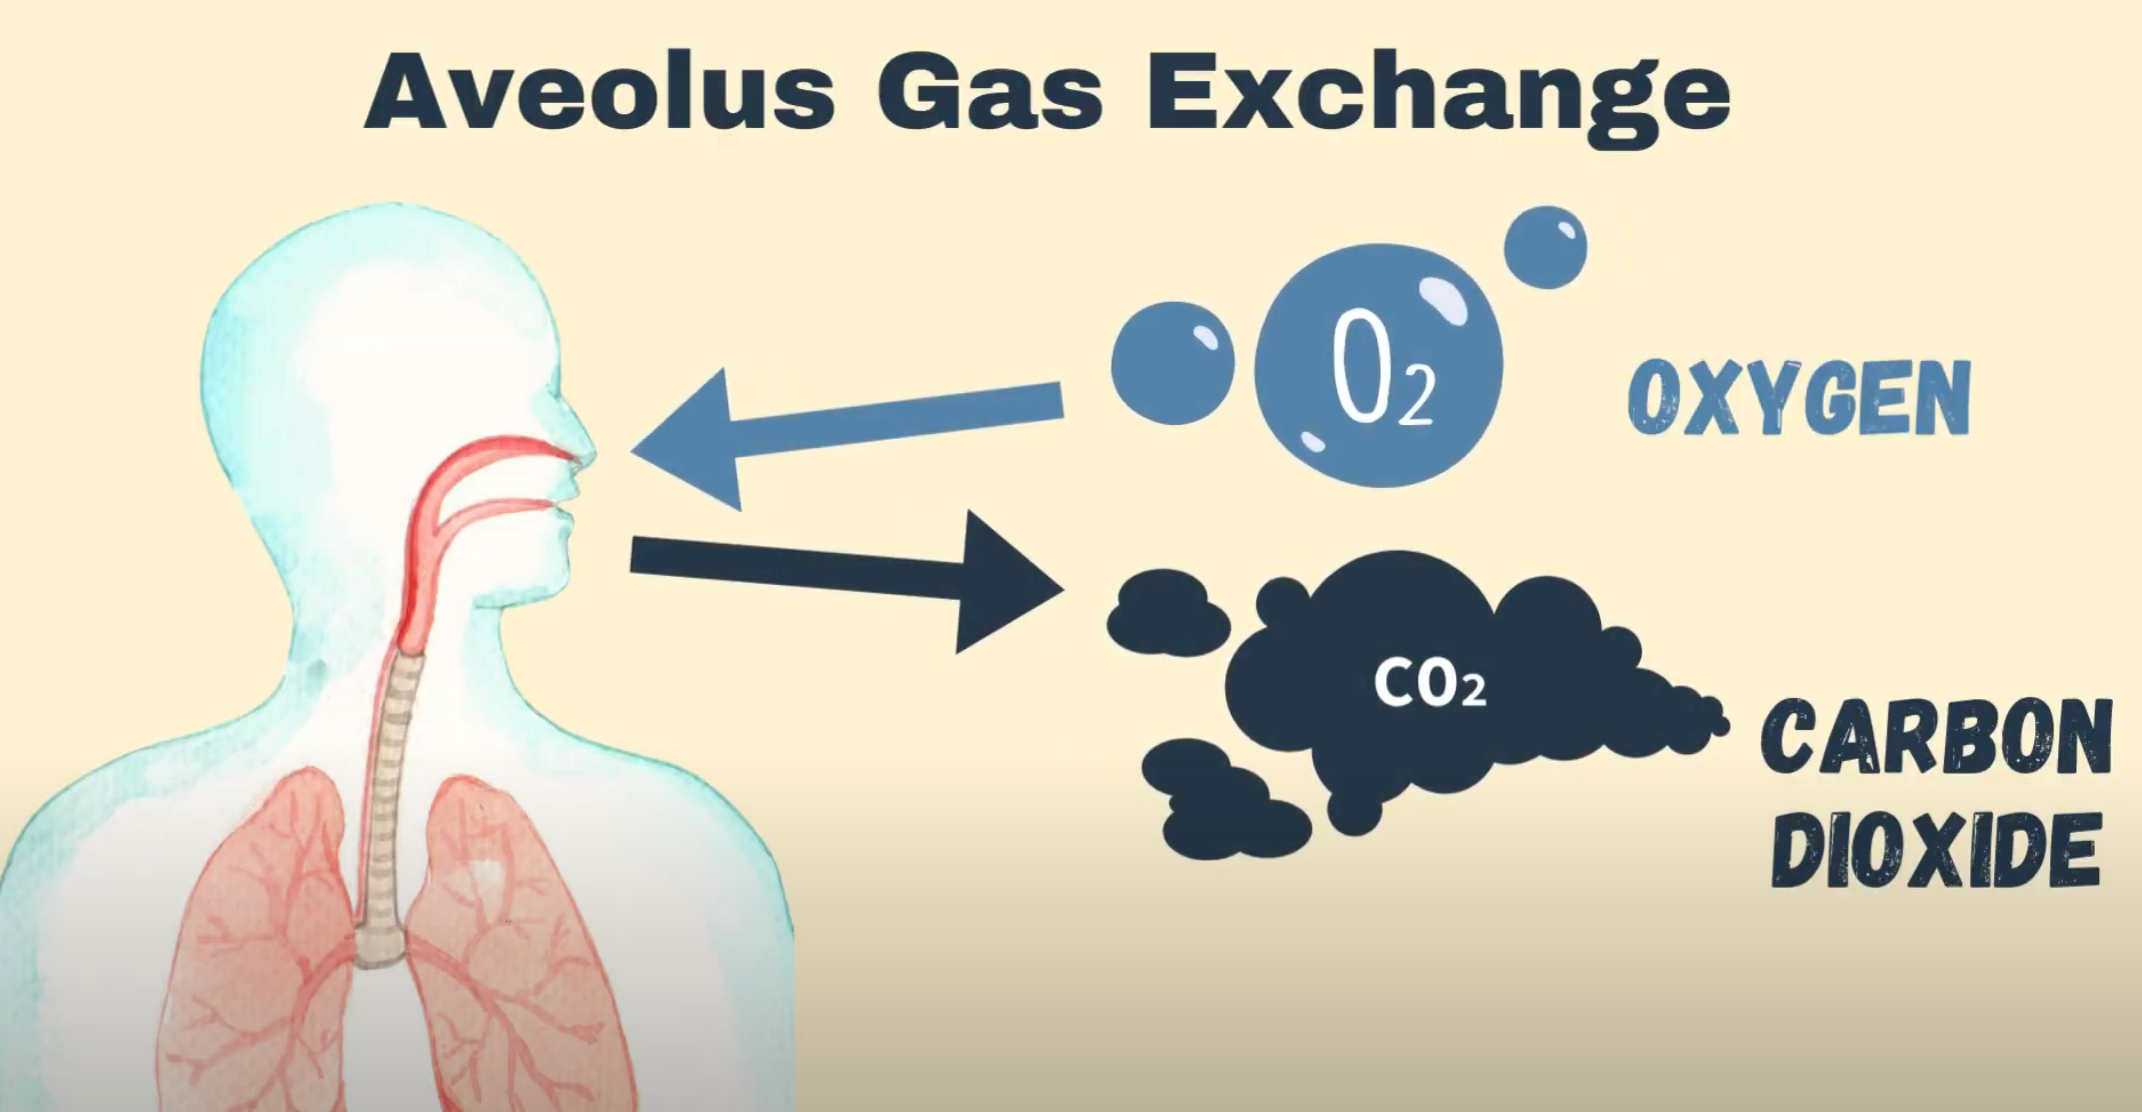 alveolus gas exchange